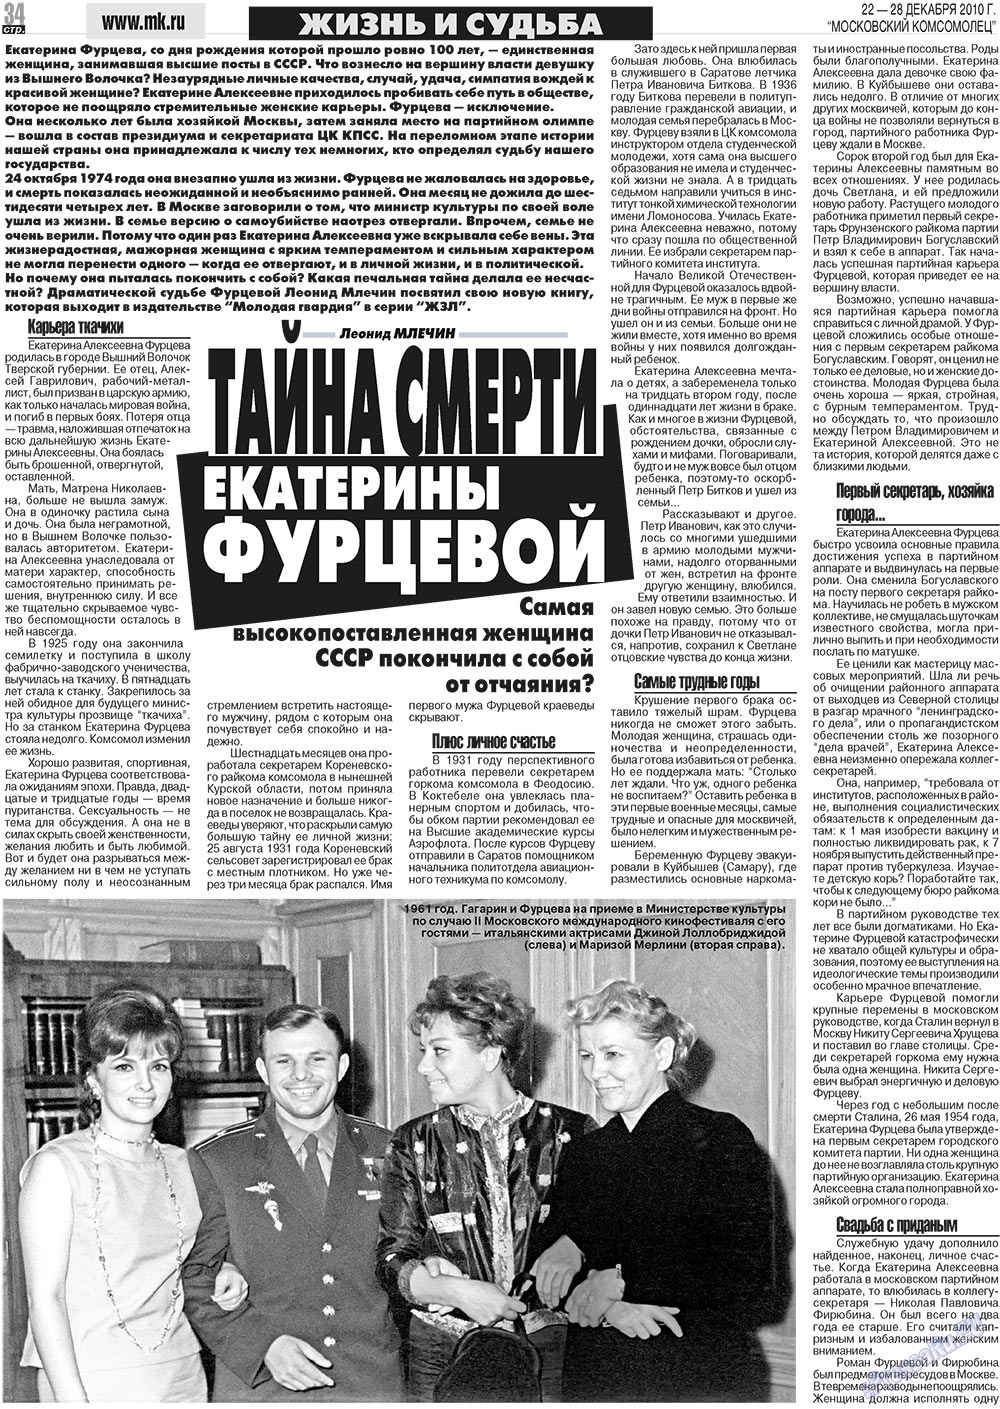 МК Испания, газета. 2010 №51 стр.34